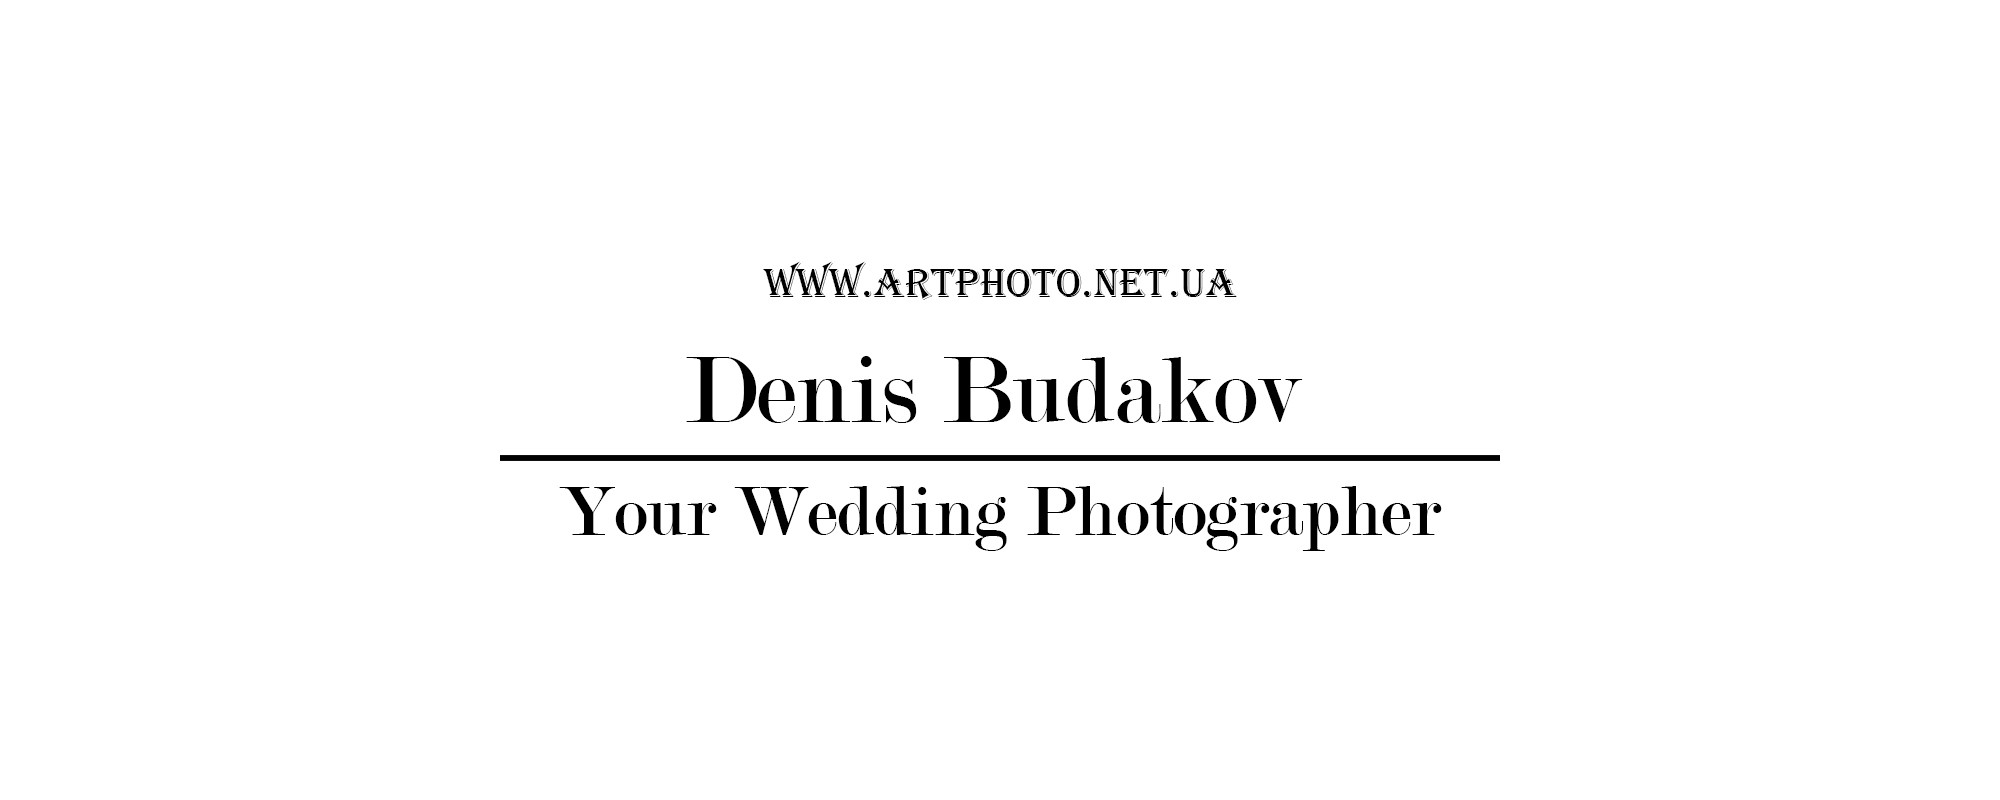 Свадебный фотограф: Денис Будаков